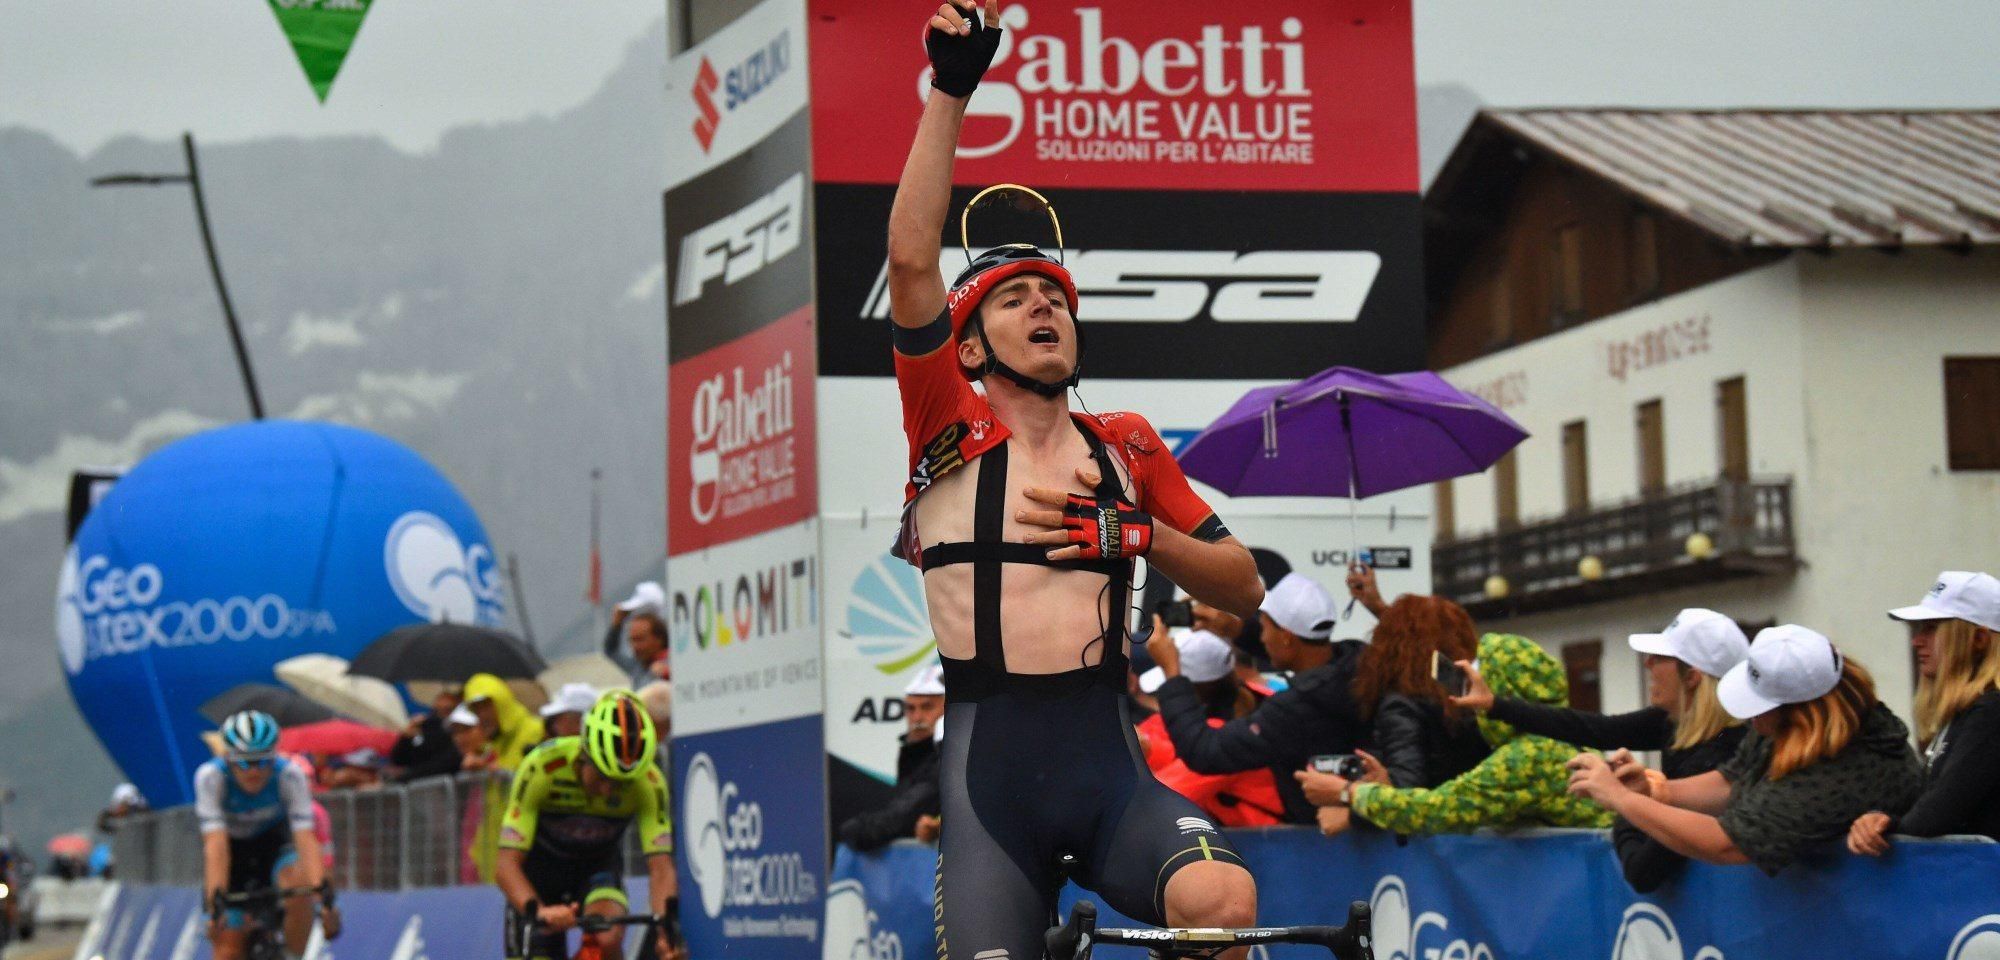 Український велогонщик Падун здобув гучну перемогу на престижних змаганнях в Італії